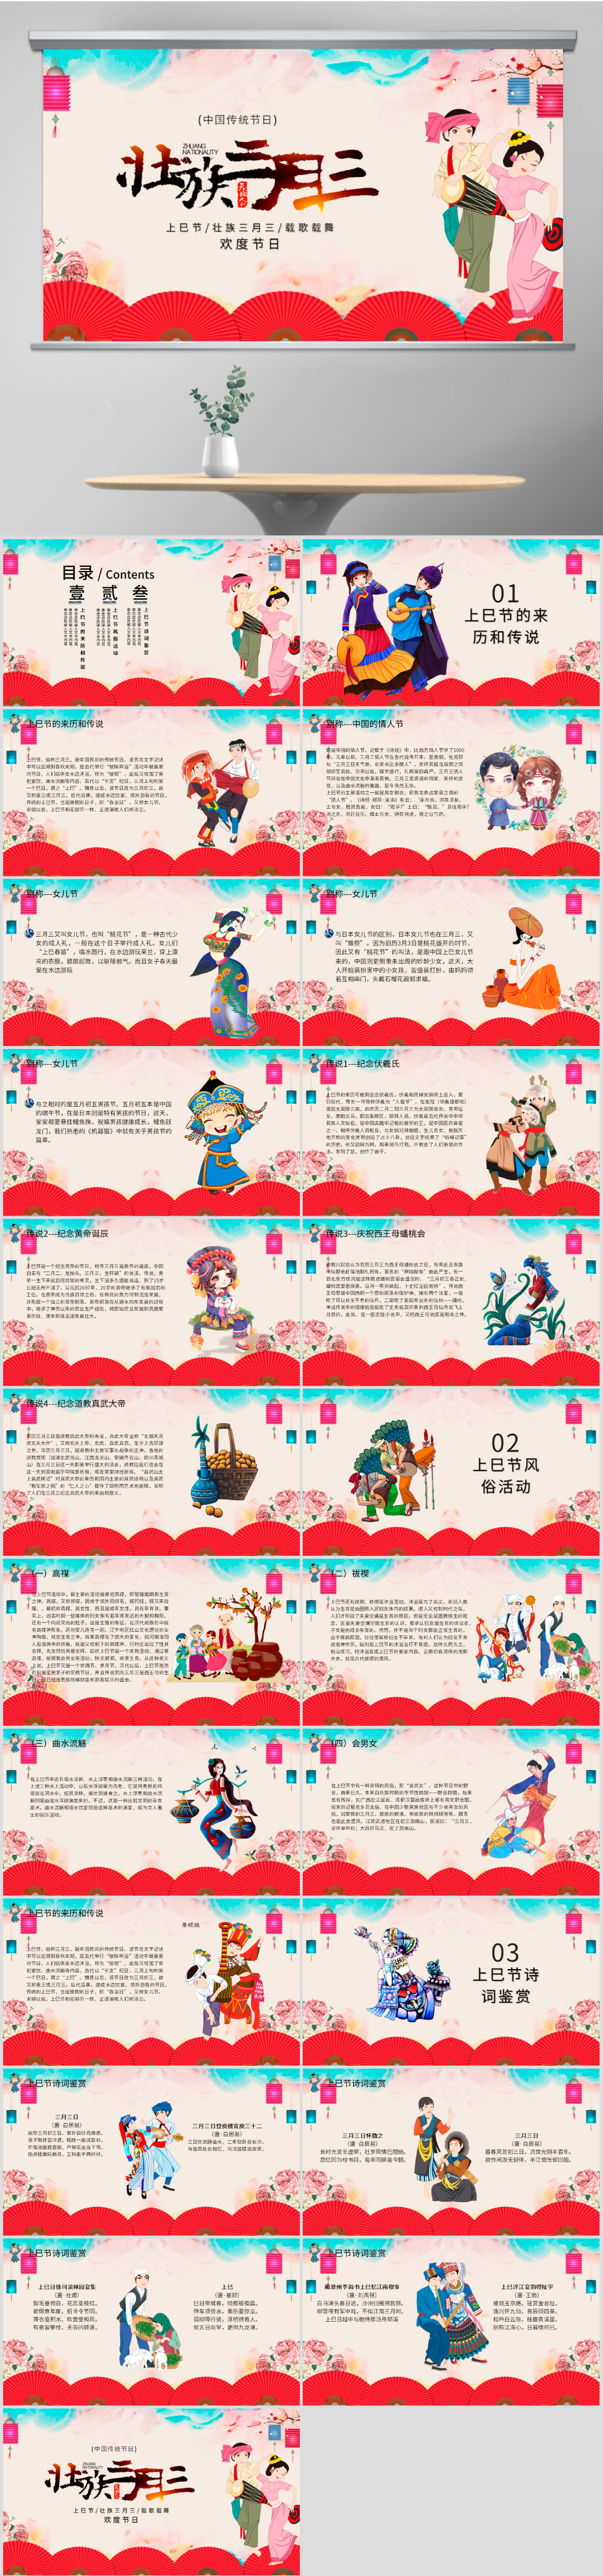 学习了解中国少数民族传统节日三月三上巳节ppt课件